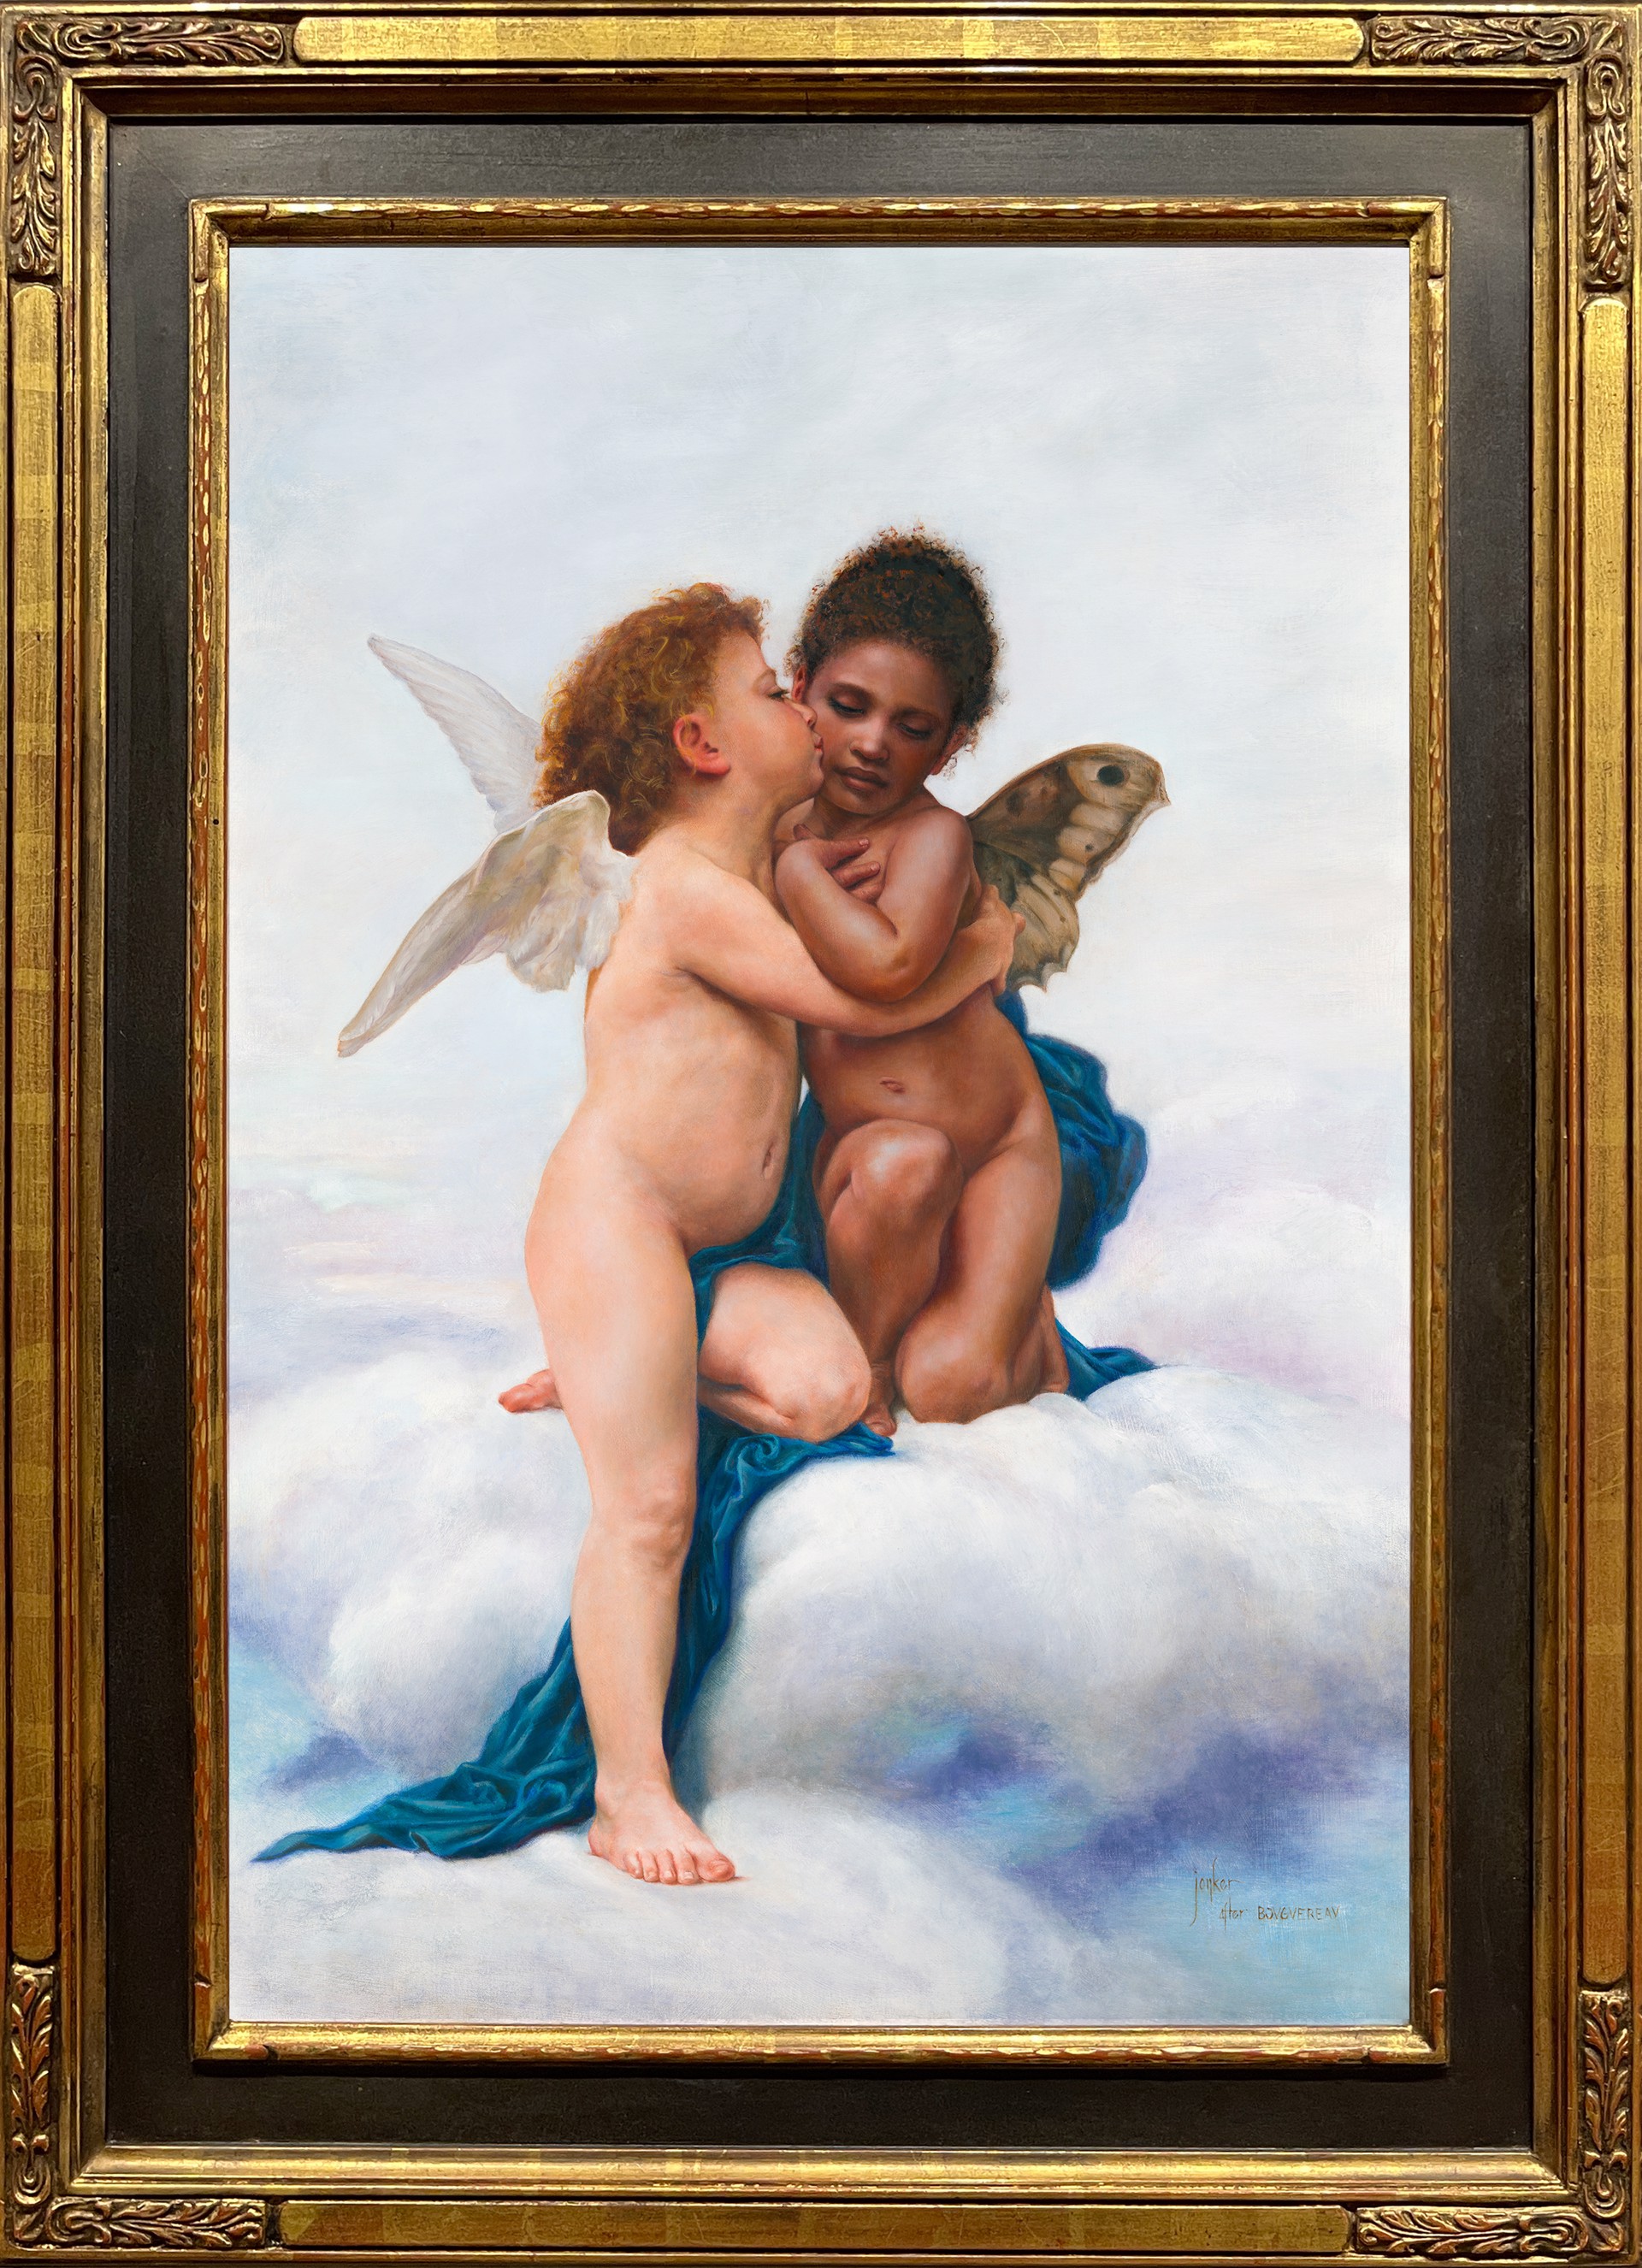 Cupid and Psyche 2022 by JuliAnne Jonker